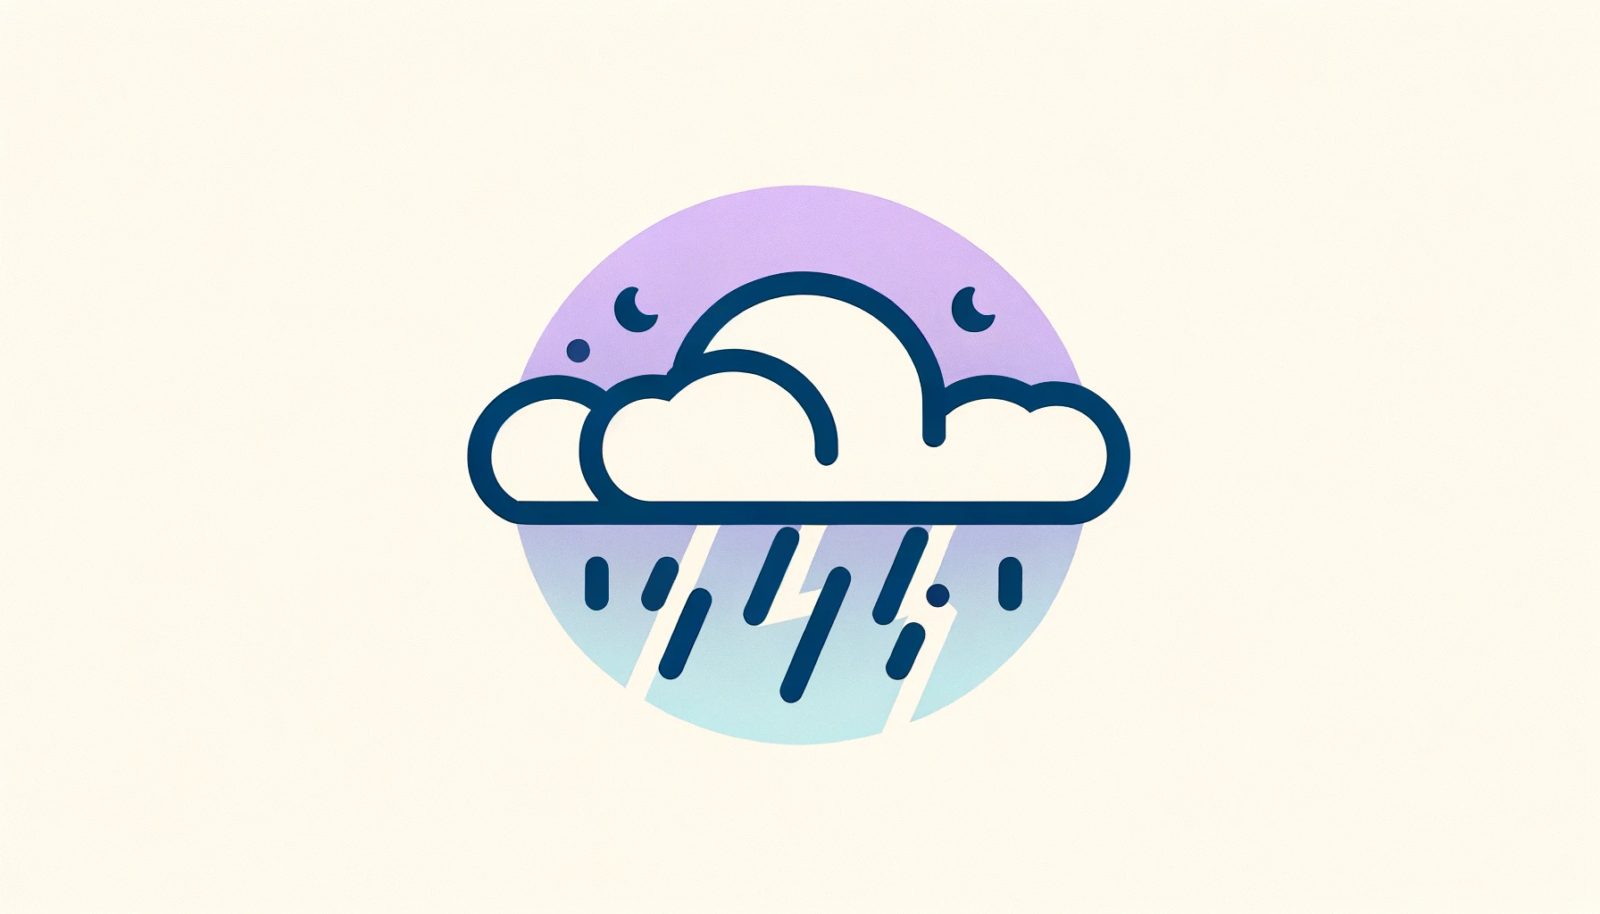 Wettersymbol mit Regen